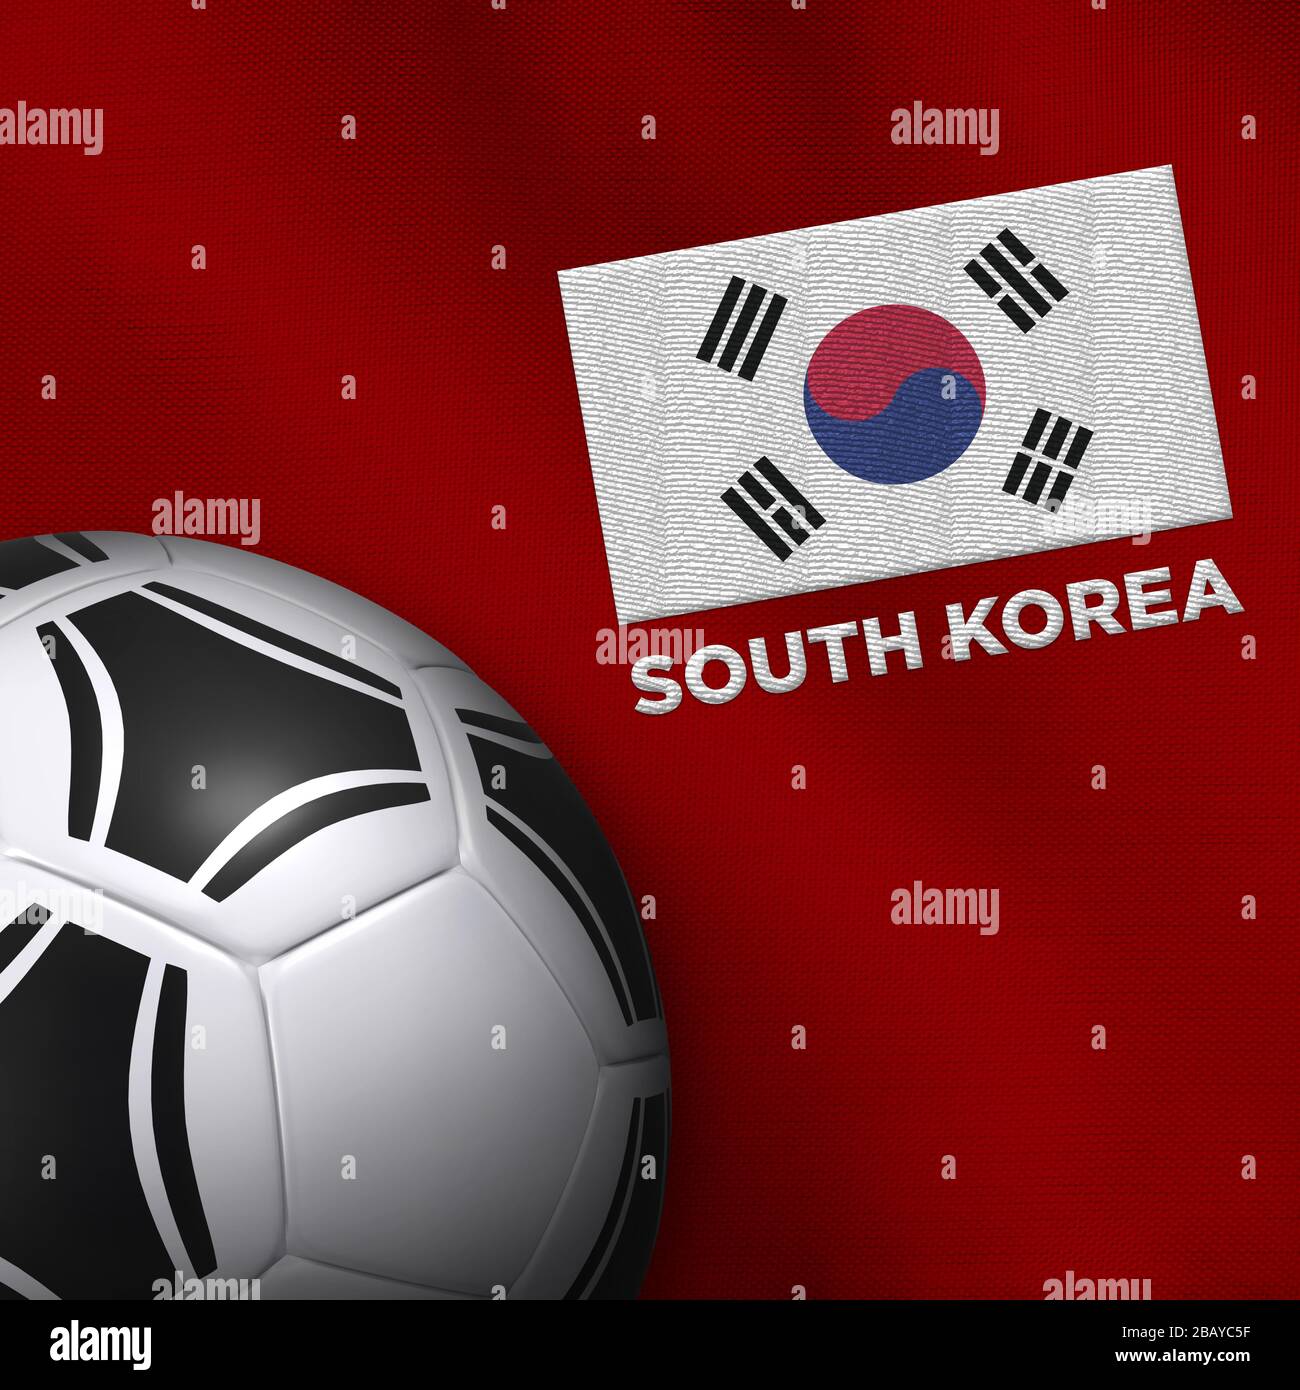 Ballon de football (football) et maillot de l'équipe nationale de Corée du Sud. Banque D'Images